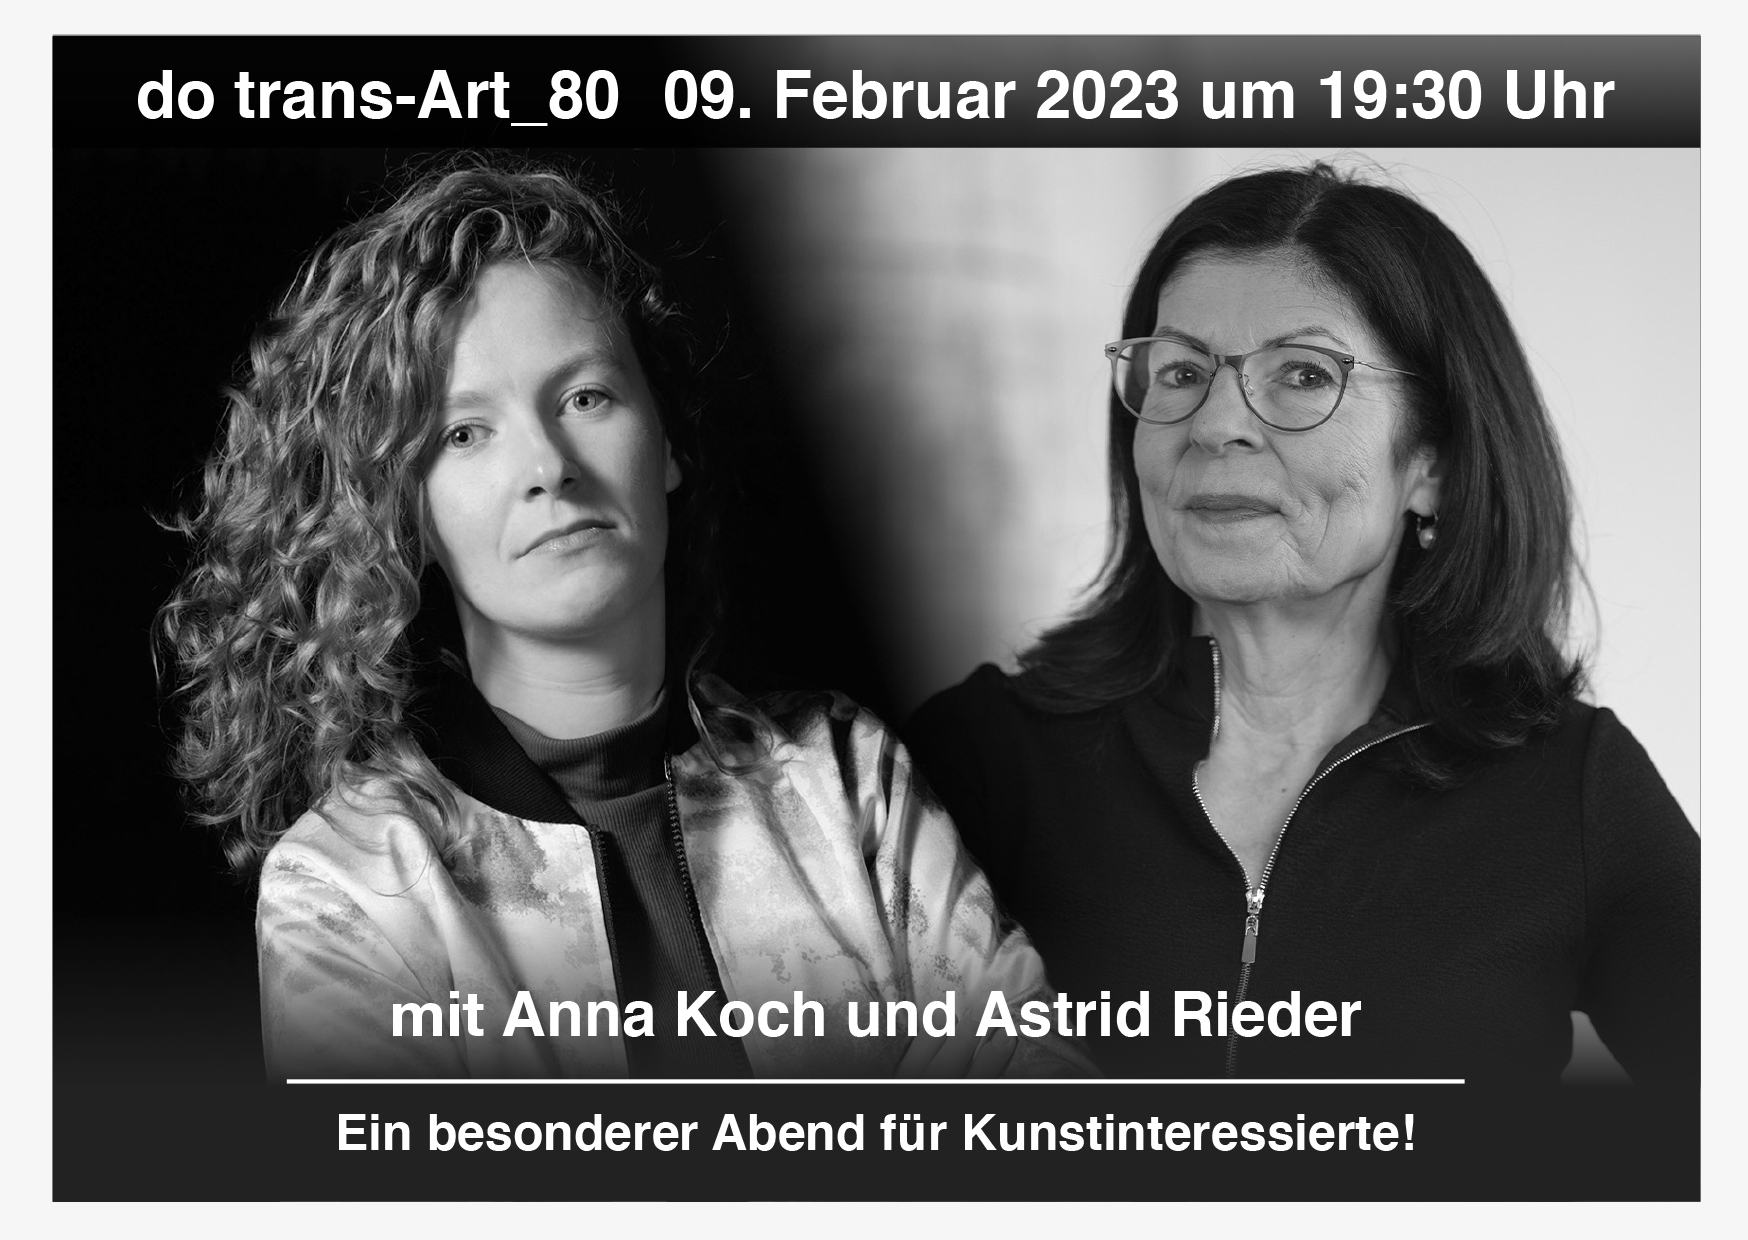 do trans-Art_80 mit Anna Koch und Astrid Rieder in der Bundesstraße 37, 5071 Wals